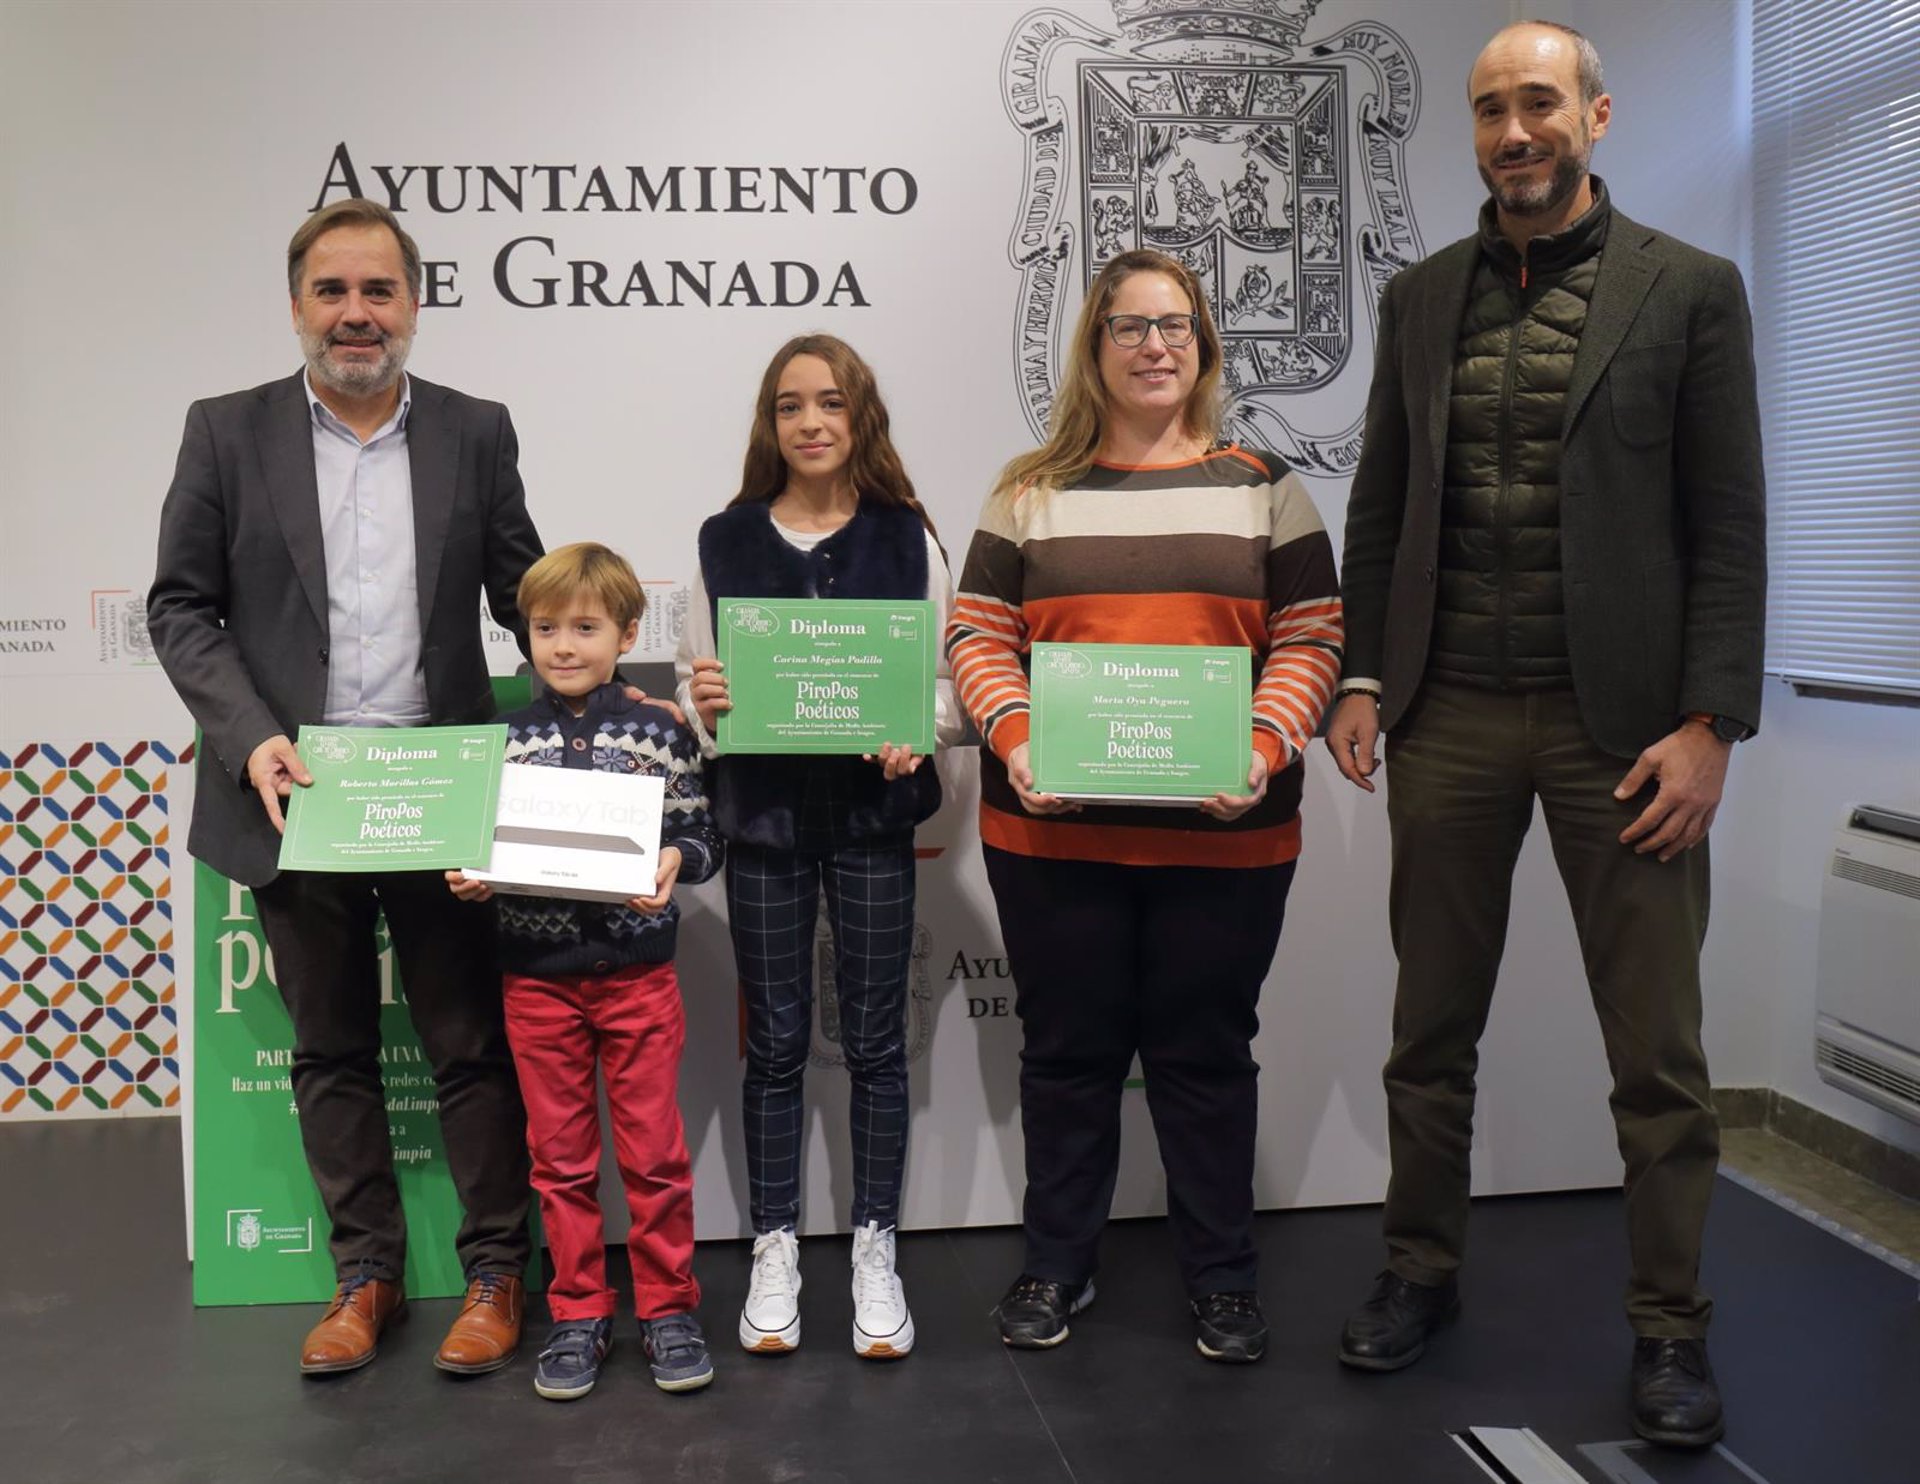 El Ayuntamiento de Granada hace viral la campaña creada para mantener limpia la ciudad